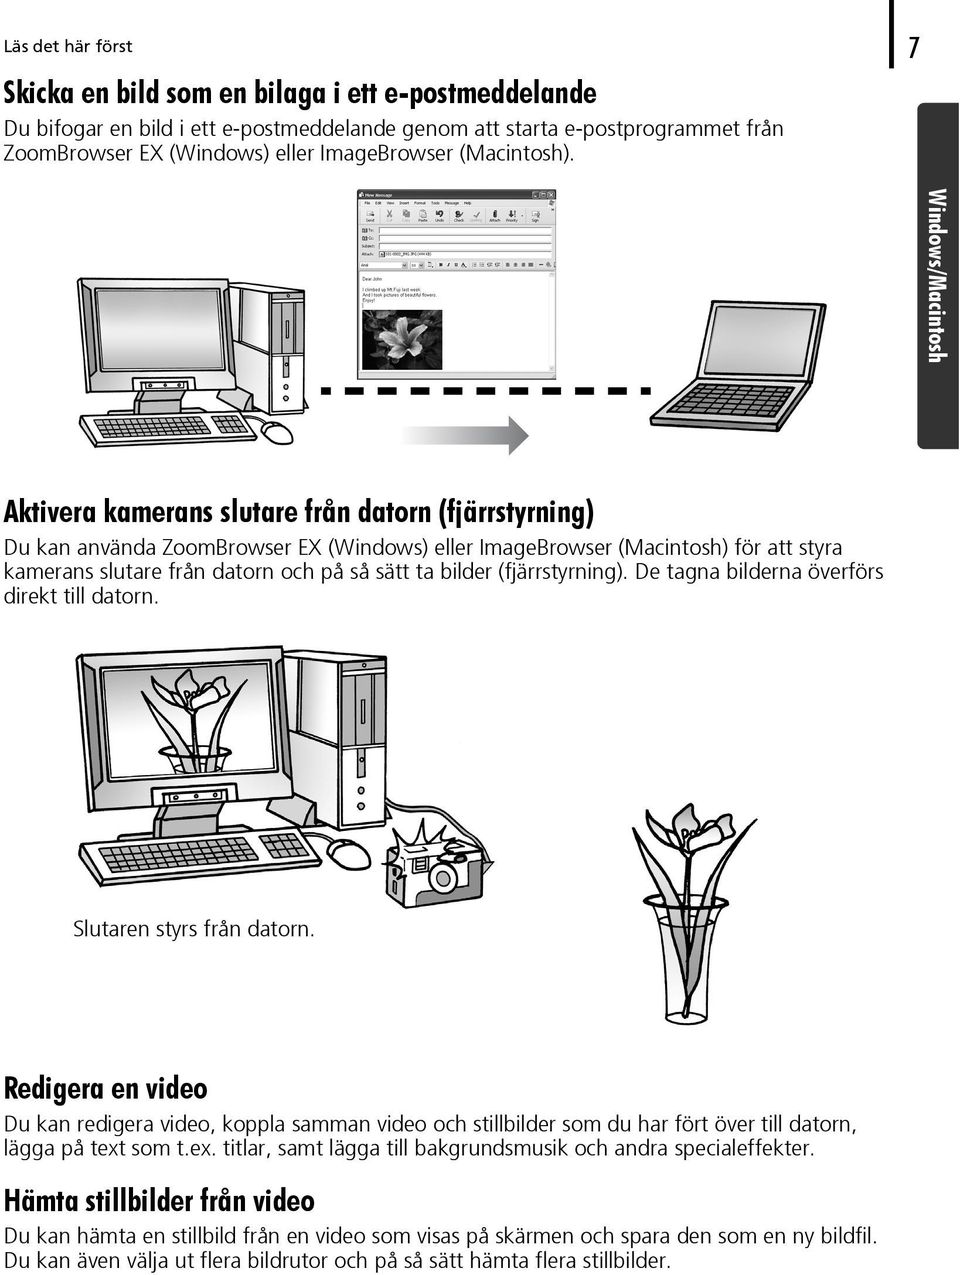 Windows/Macintosh Aktivera kamerans slutare från datorn (fjärrstyrning) Du kan använda ZoomBrowser EX (Windows) eller ImageBrowser (Macintosh) för att styra kamerans slutare från datorn och på så